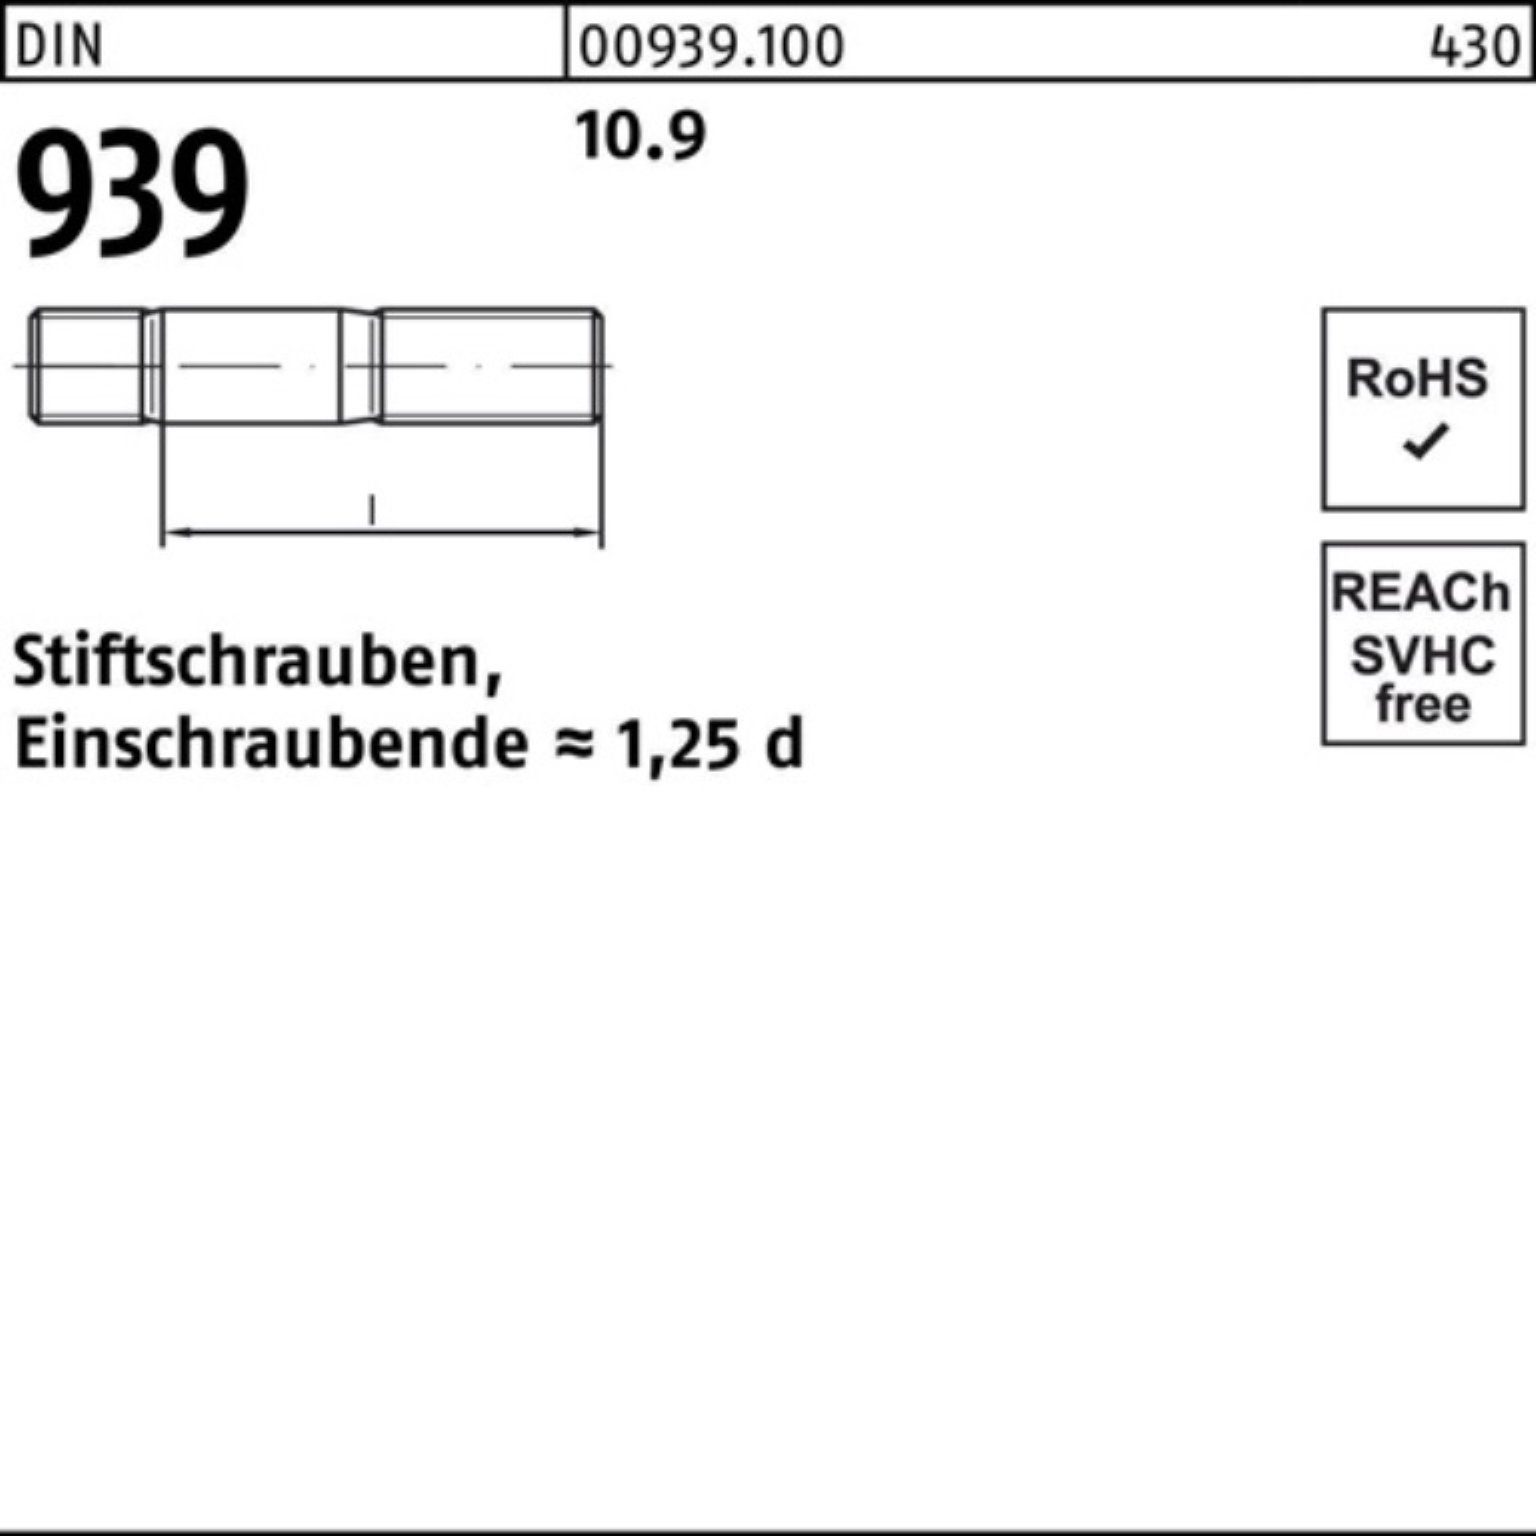 Stiftschraube Pack 939 Stiftschraube Einschraubende=1,25d 10 M16x 190 10.9 Reyher DIN 100er